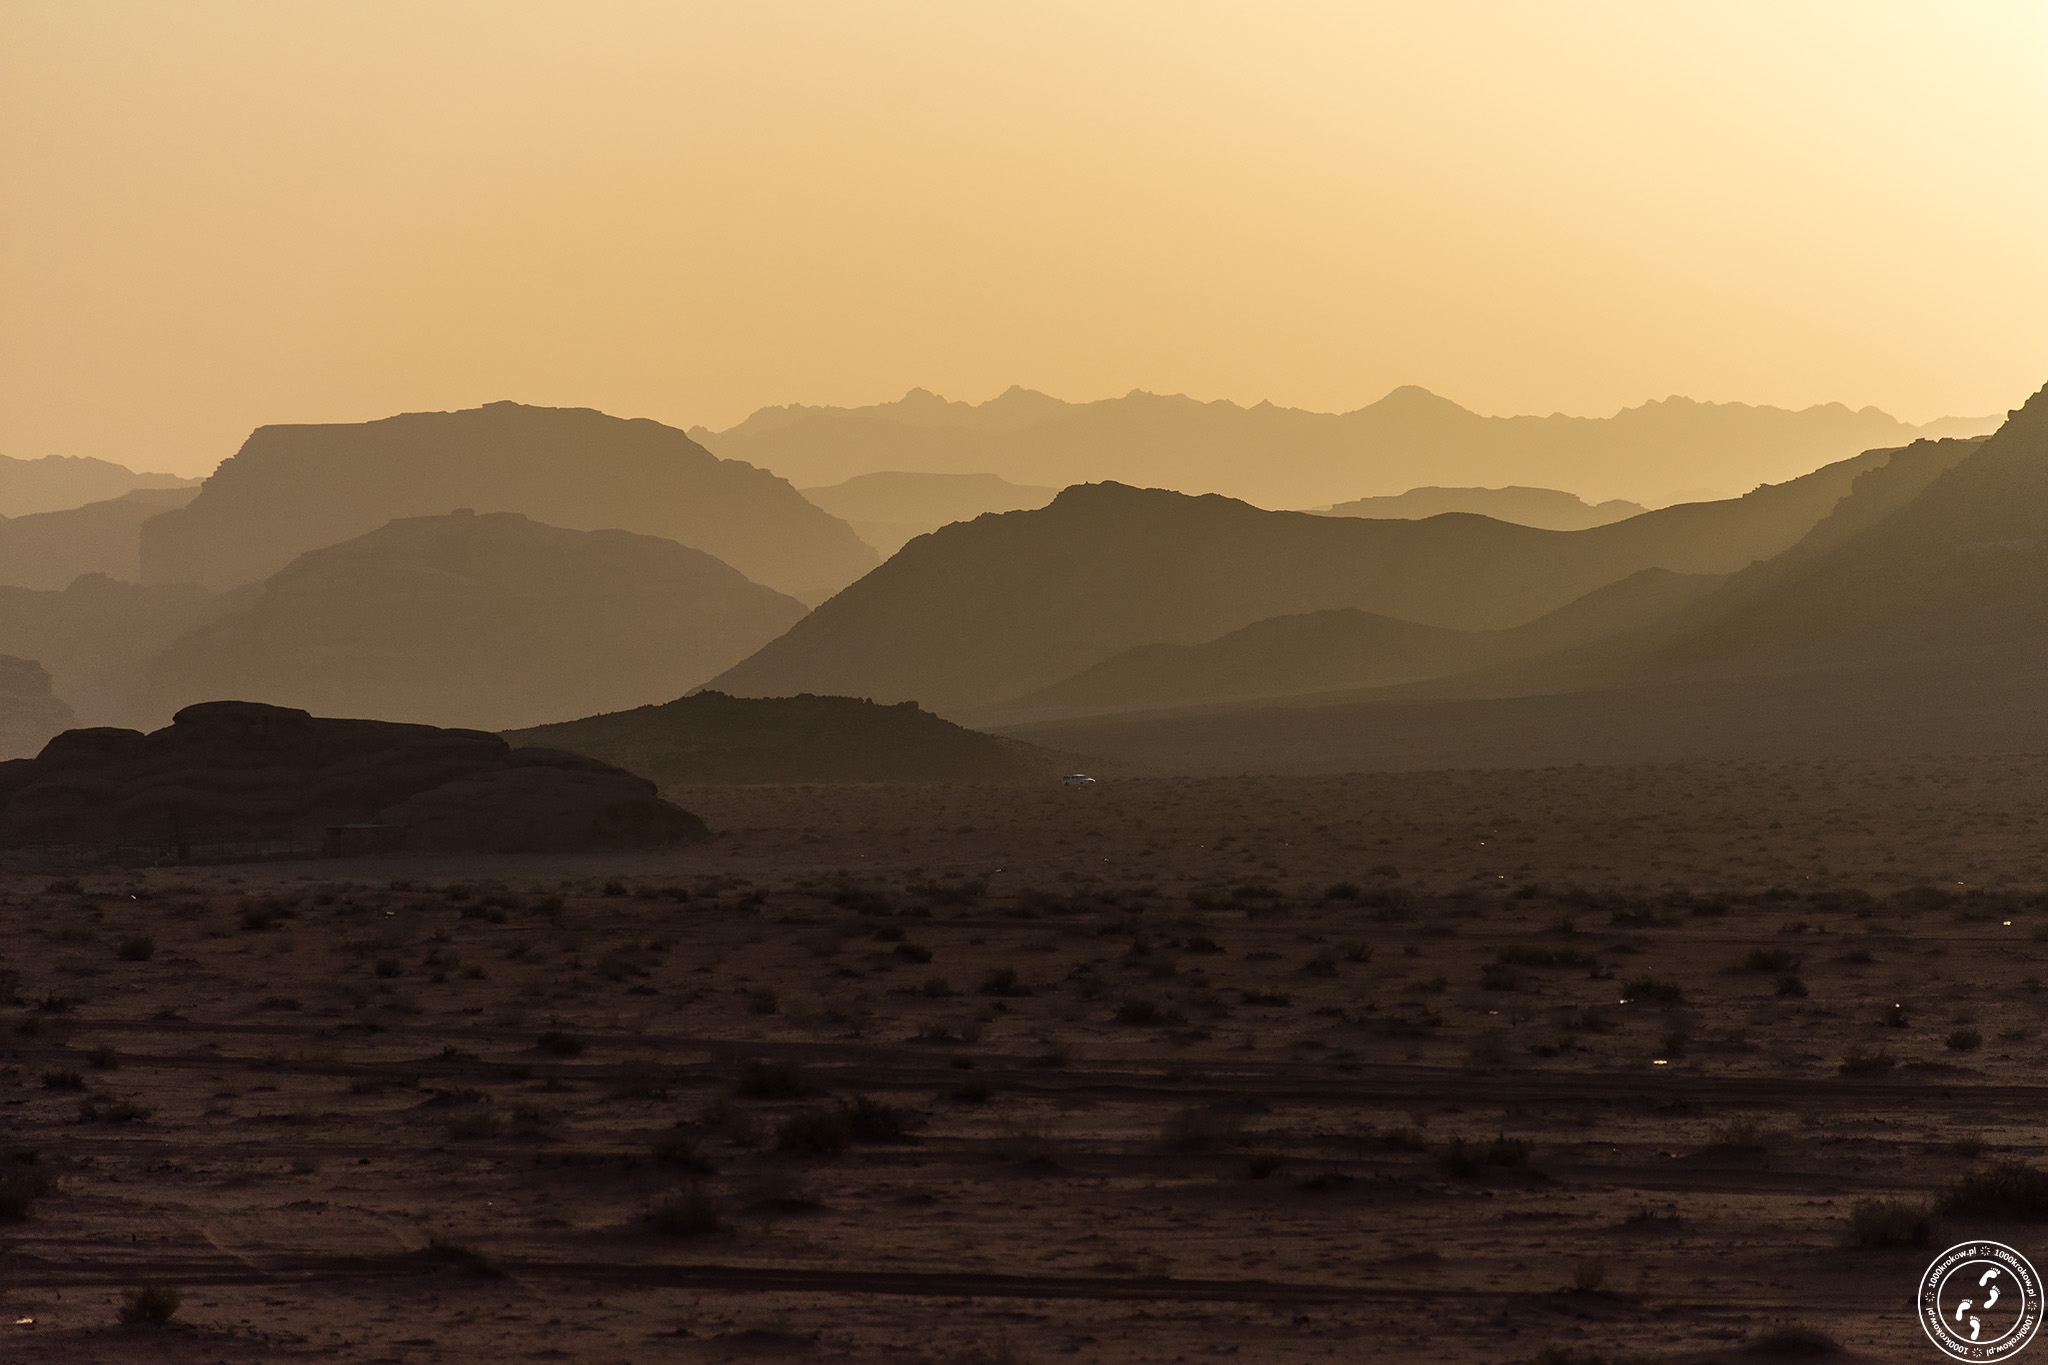 Wadi Rum.